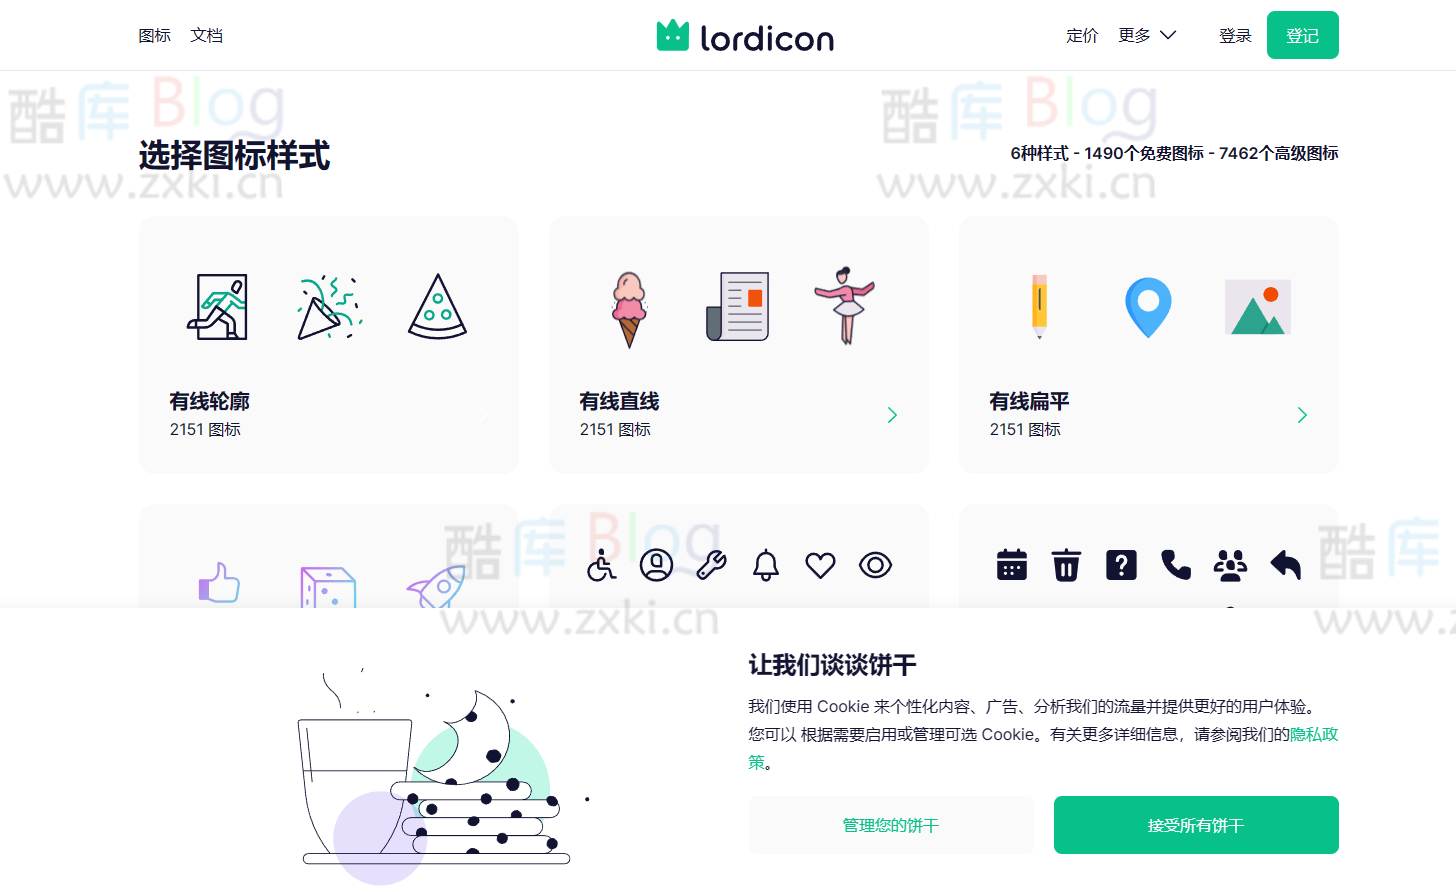 lordicon，动画图标下载在线网站 第2张插图